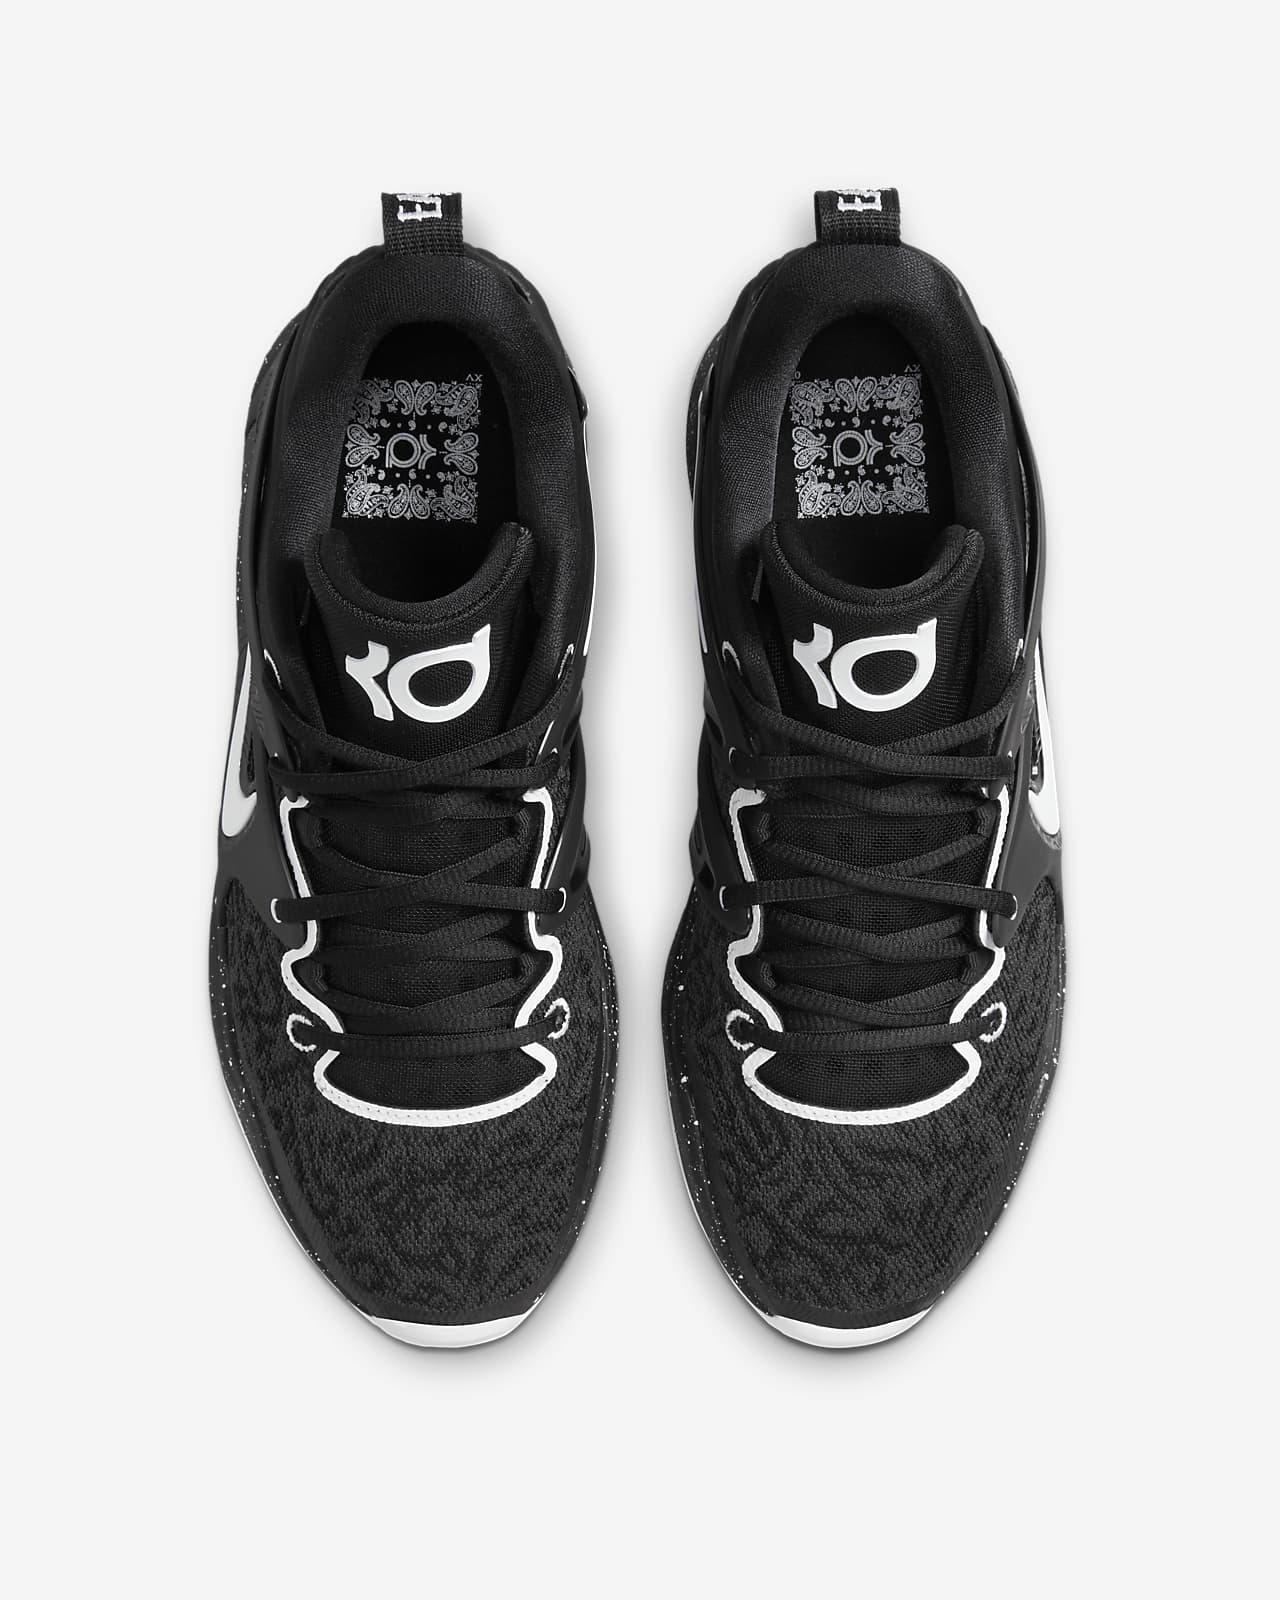 (Team) Shoes. Nike.com